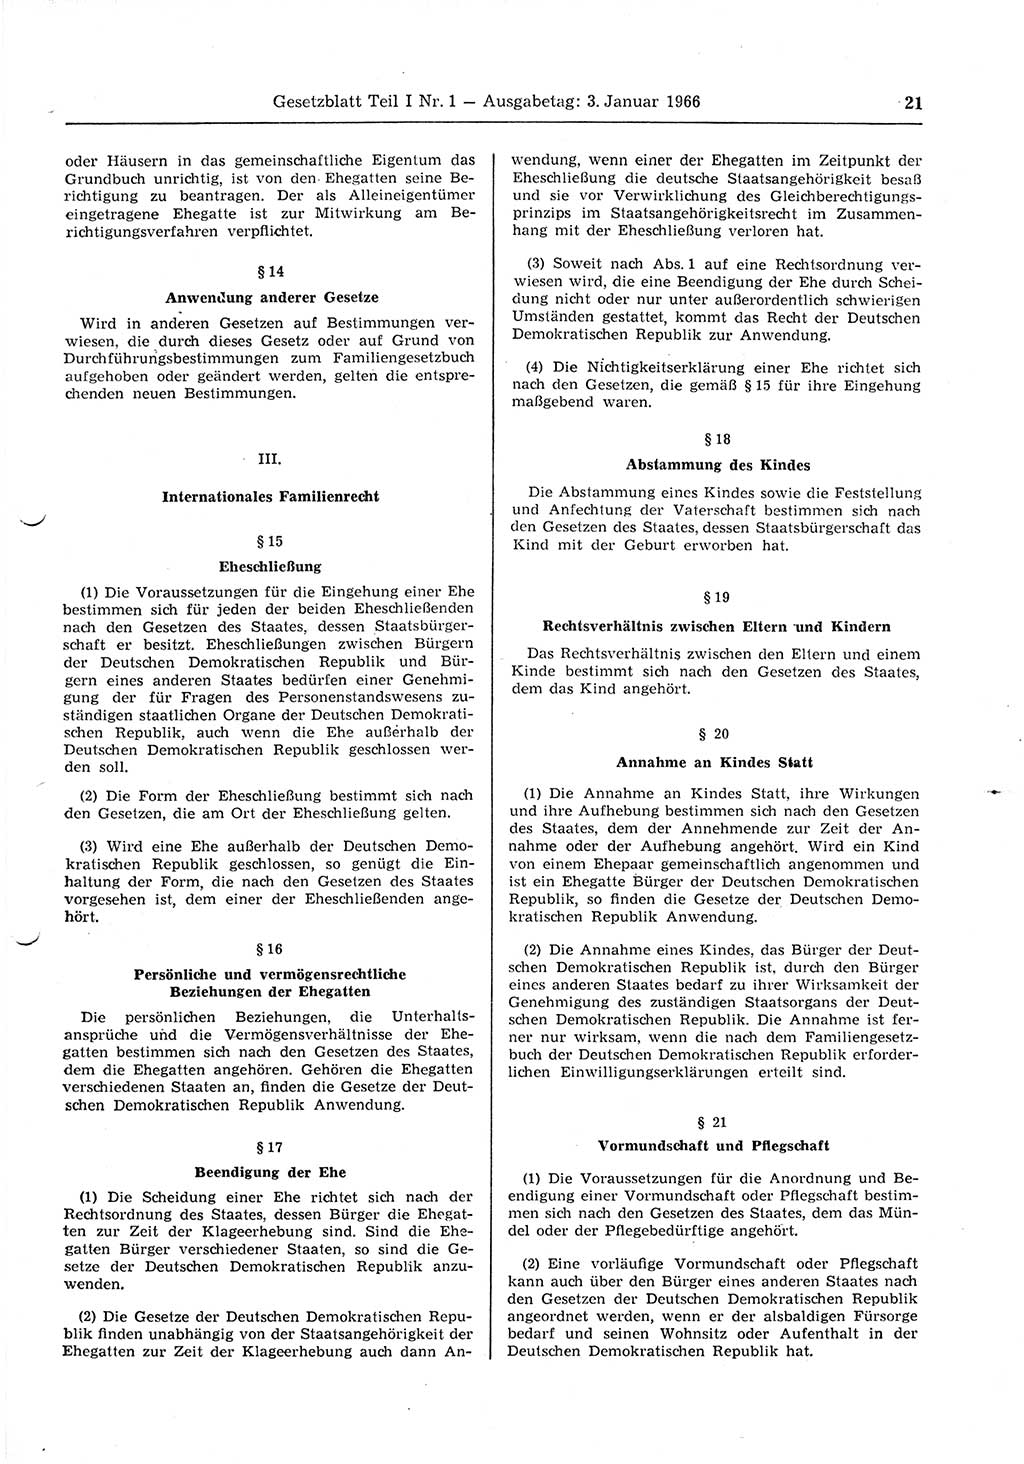 Gesetzblatt (GBl.) der Deutschen Demokratischen Republik (DDR) Teil Ⅰ 1966, Seite 21 (GBl. DDR Ⅰ 1966, S. 21)